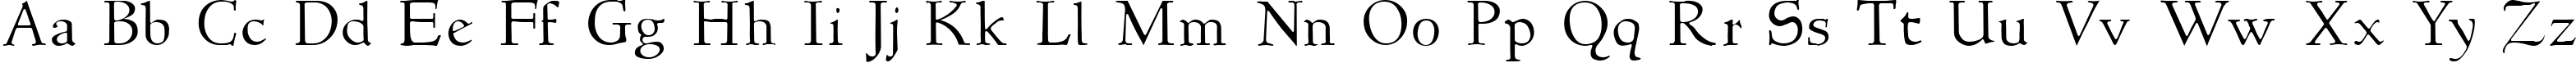 Пример написания английского алфавита шрифтом NewStyleLight